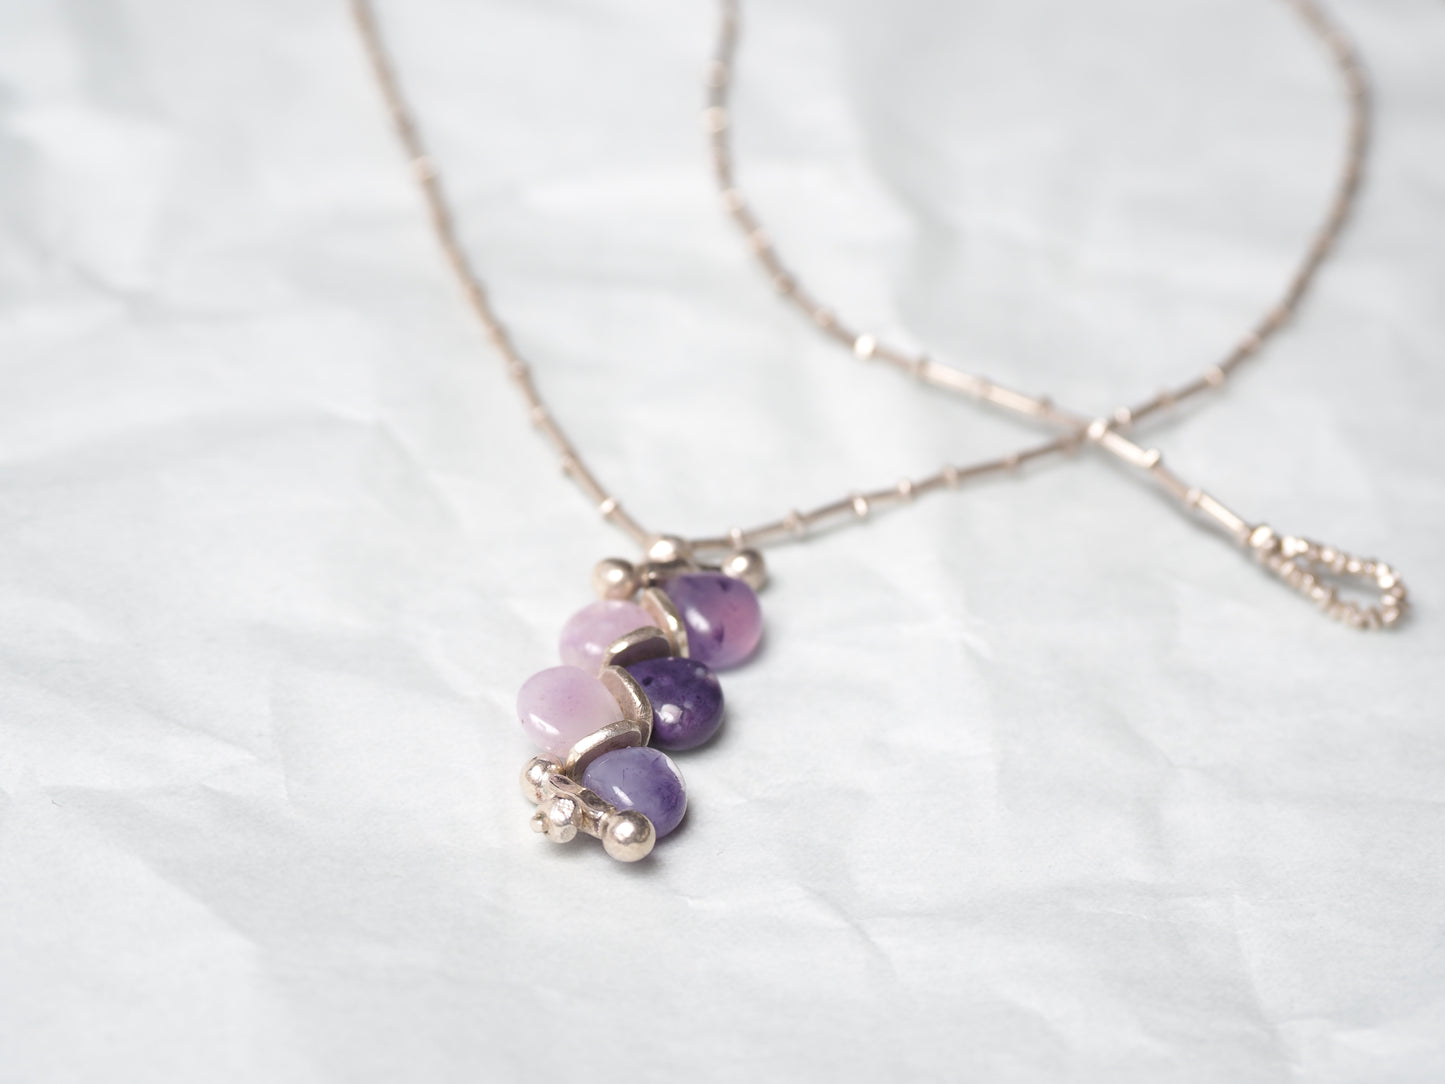 -Tiffany stone- silver pendant